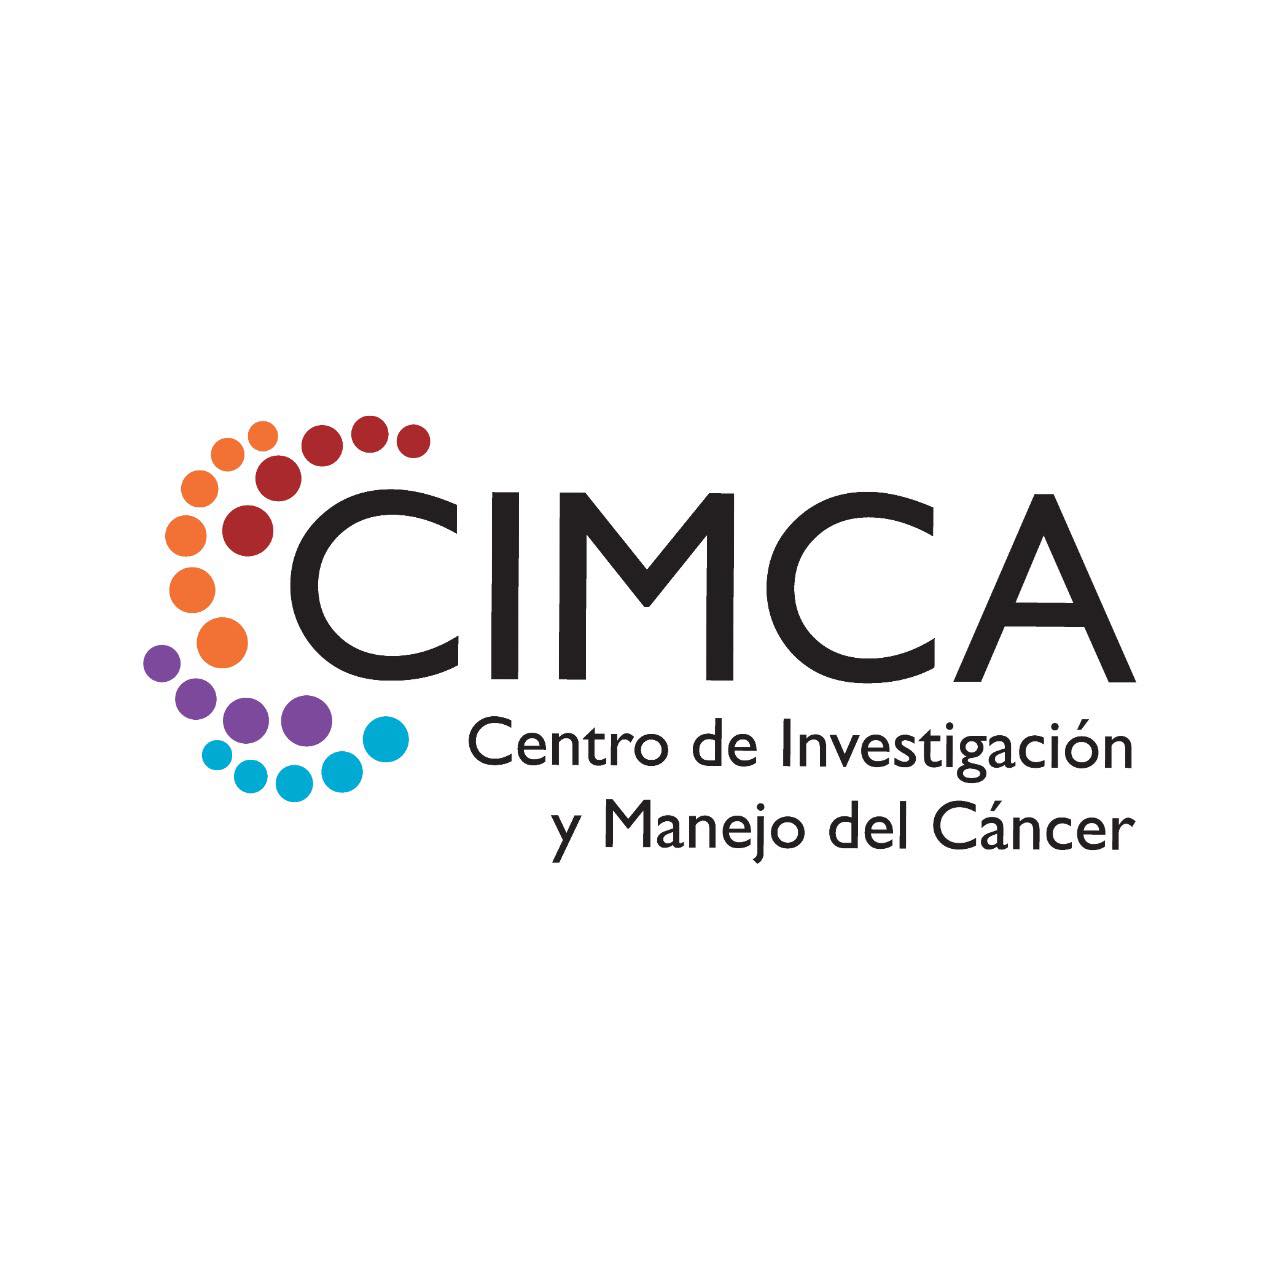 CIMCA (Centro de Investigación y Manejo del Cáncer